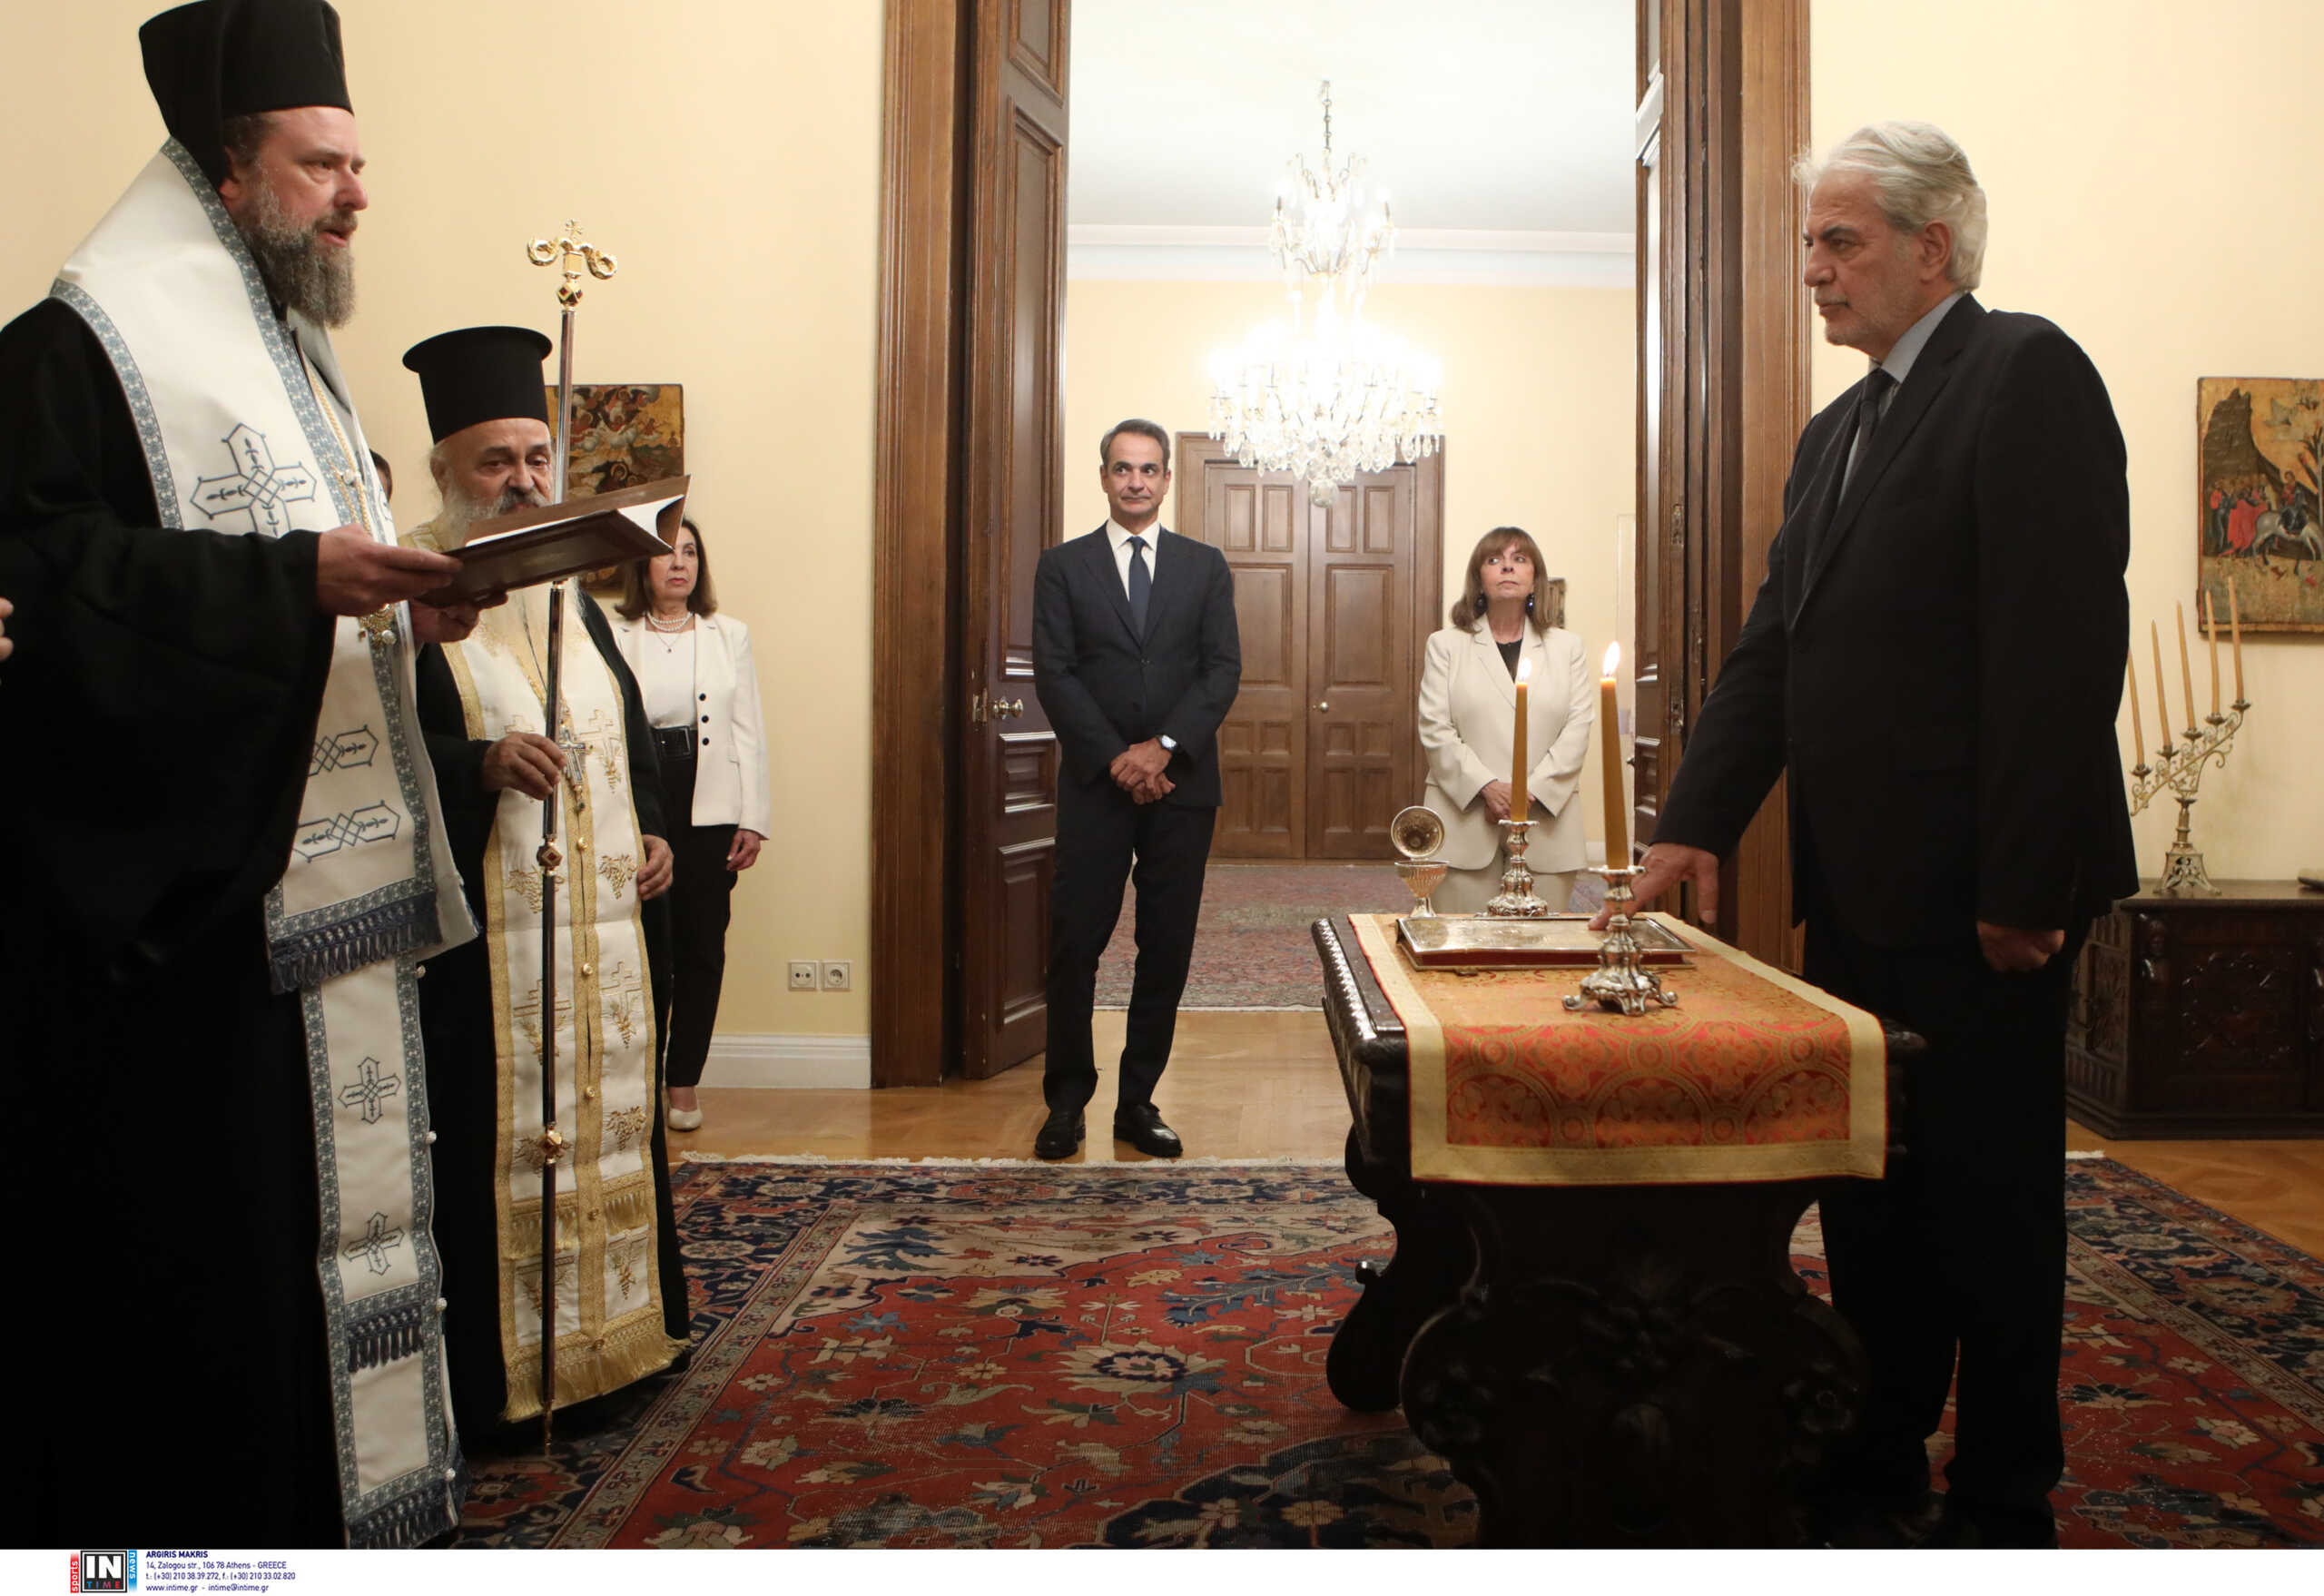 Ορκίστηκε ο νέος Υπουργός Ναυτιλίας και Νησιωτικής Πολιτικής Χρήστος Στυλιανίδης παρουσία Κυριάκου Μητσοτάκη και Κατερίνας Σακελλαροπούλου